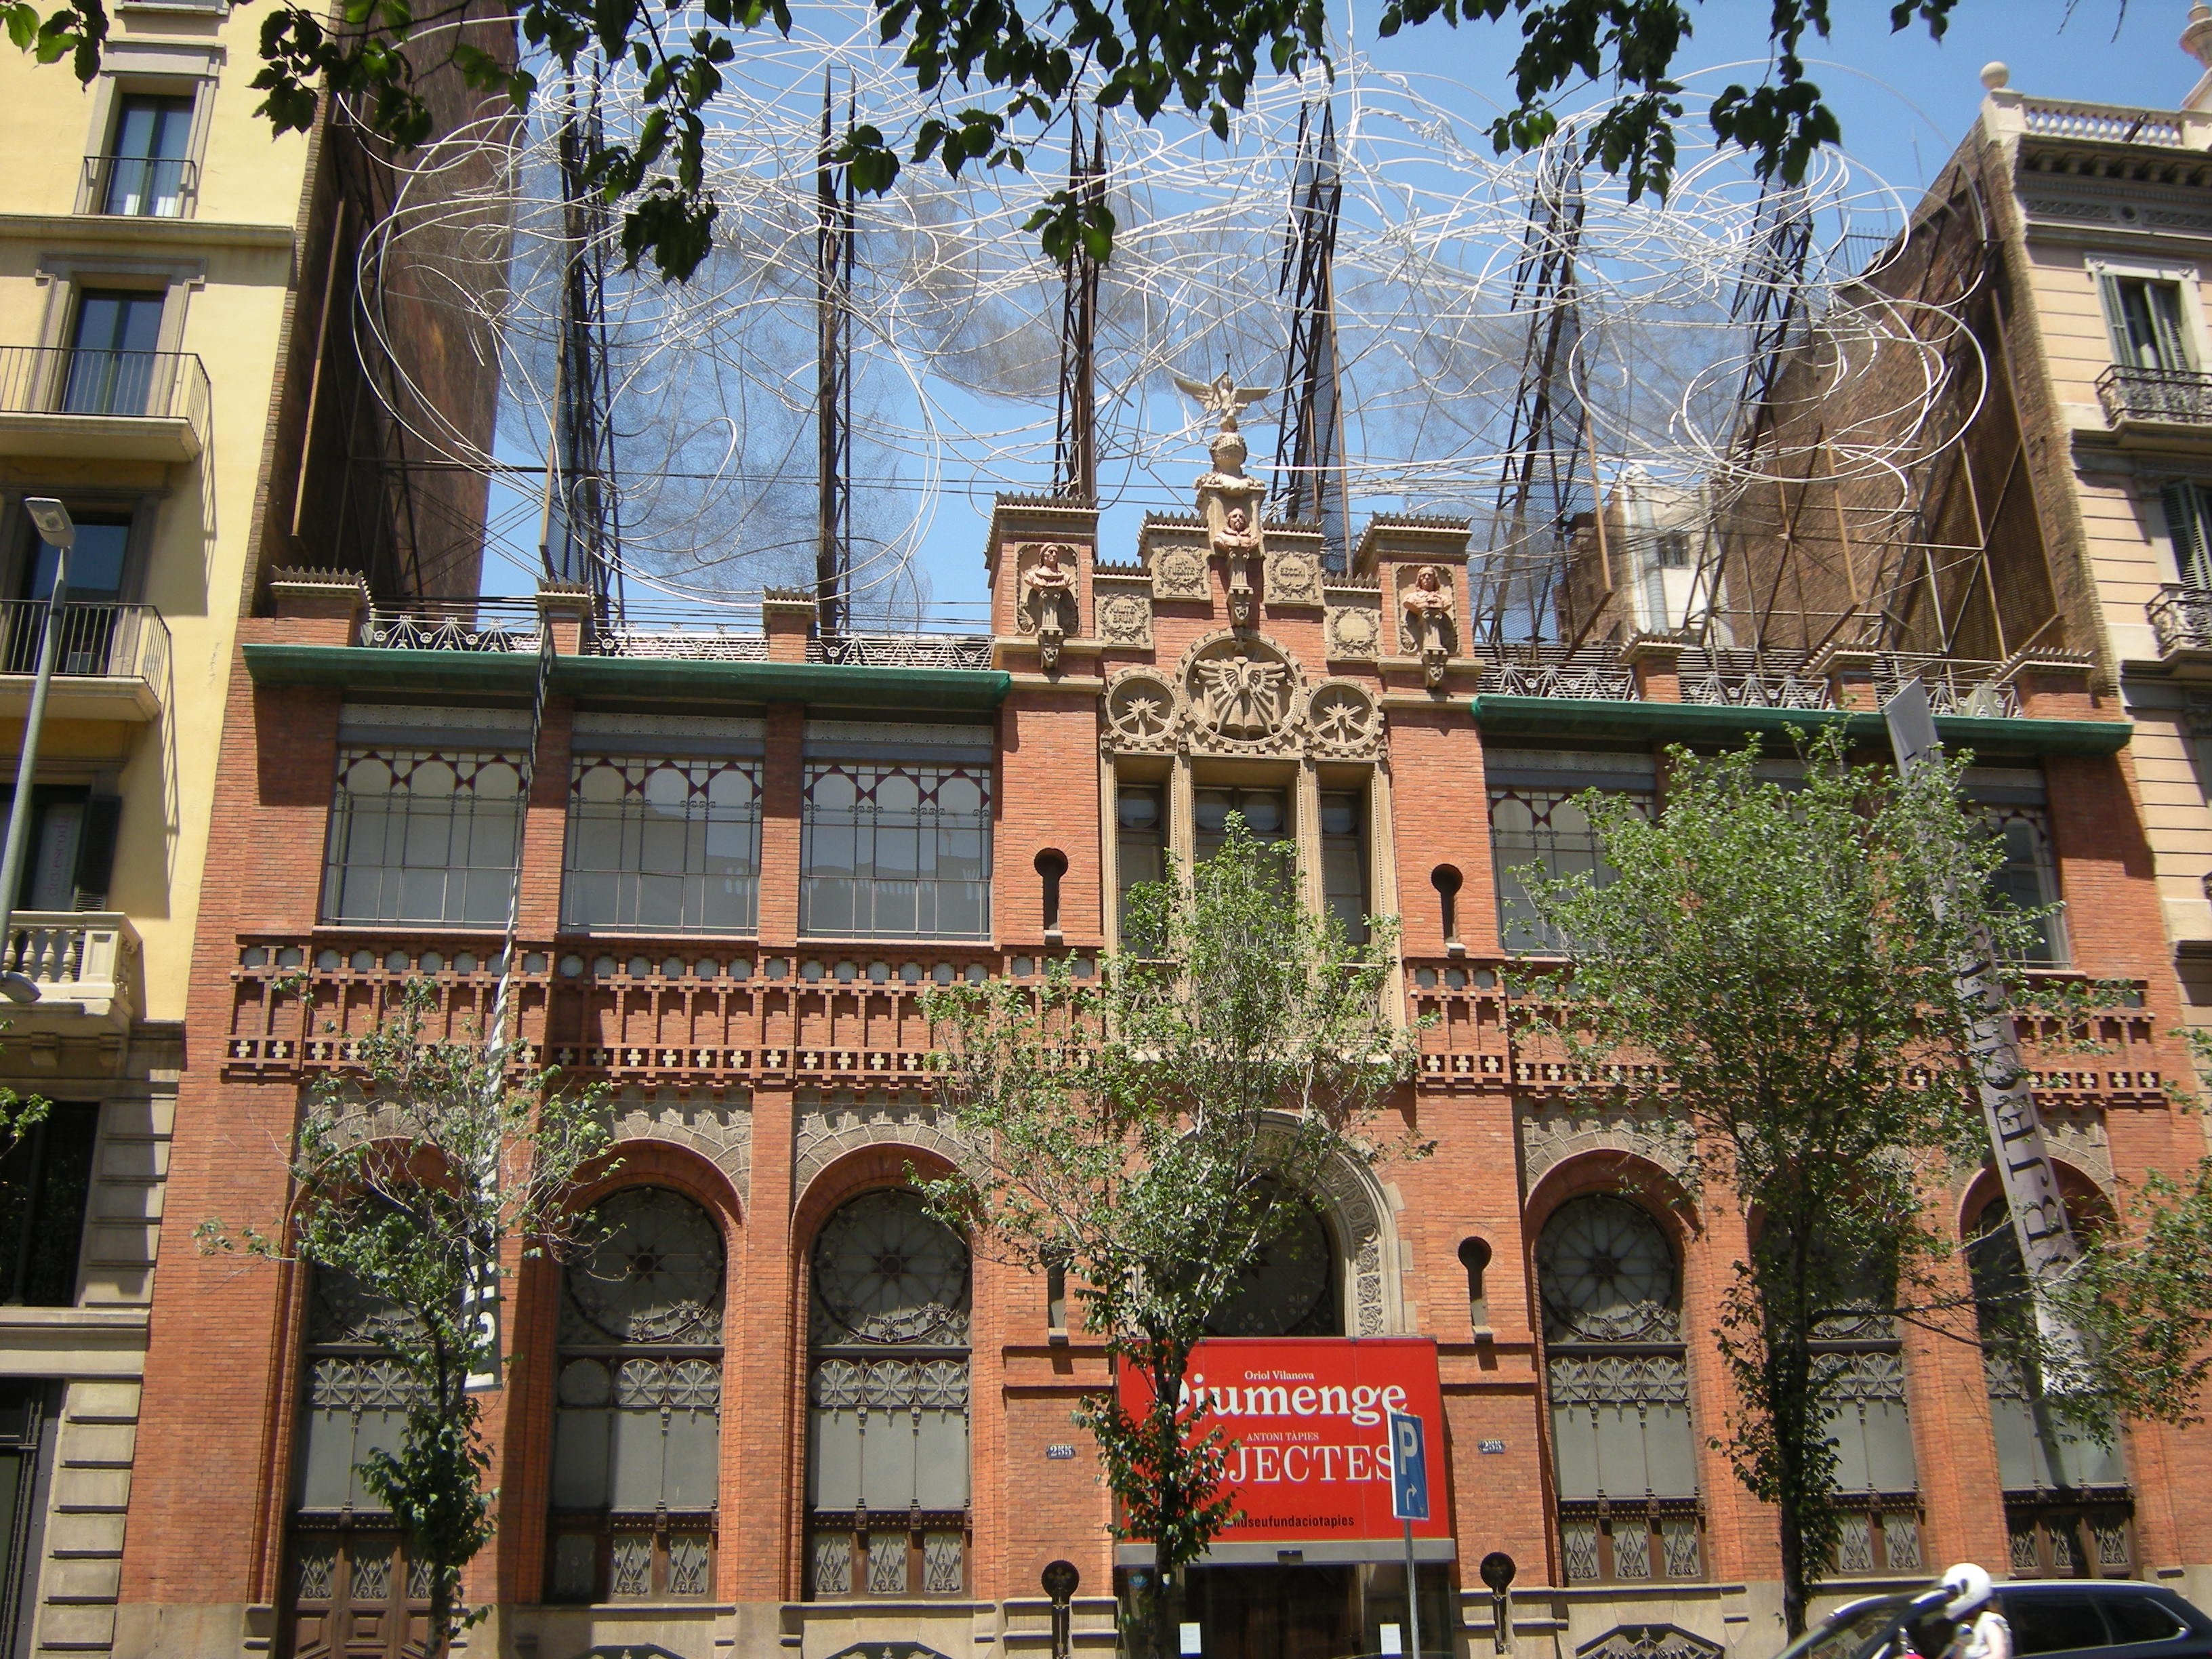 Fundació Antoni Tàpies, Museum, Barcelona: All Year